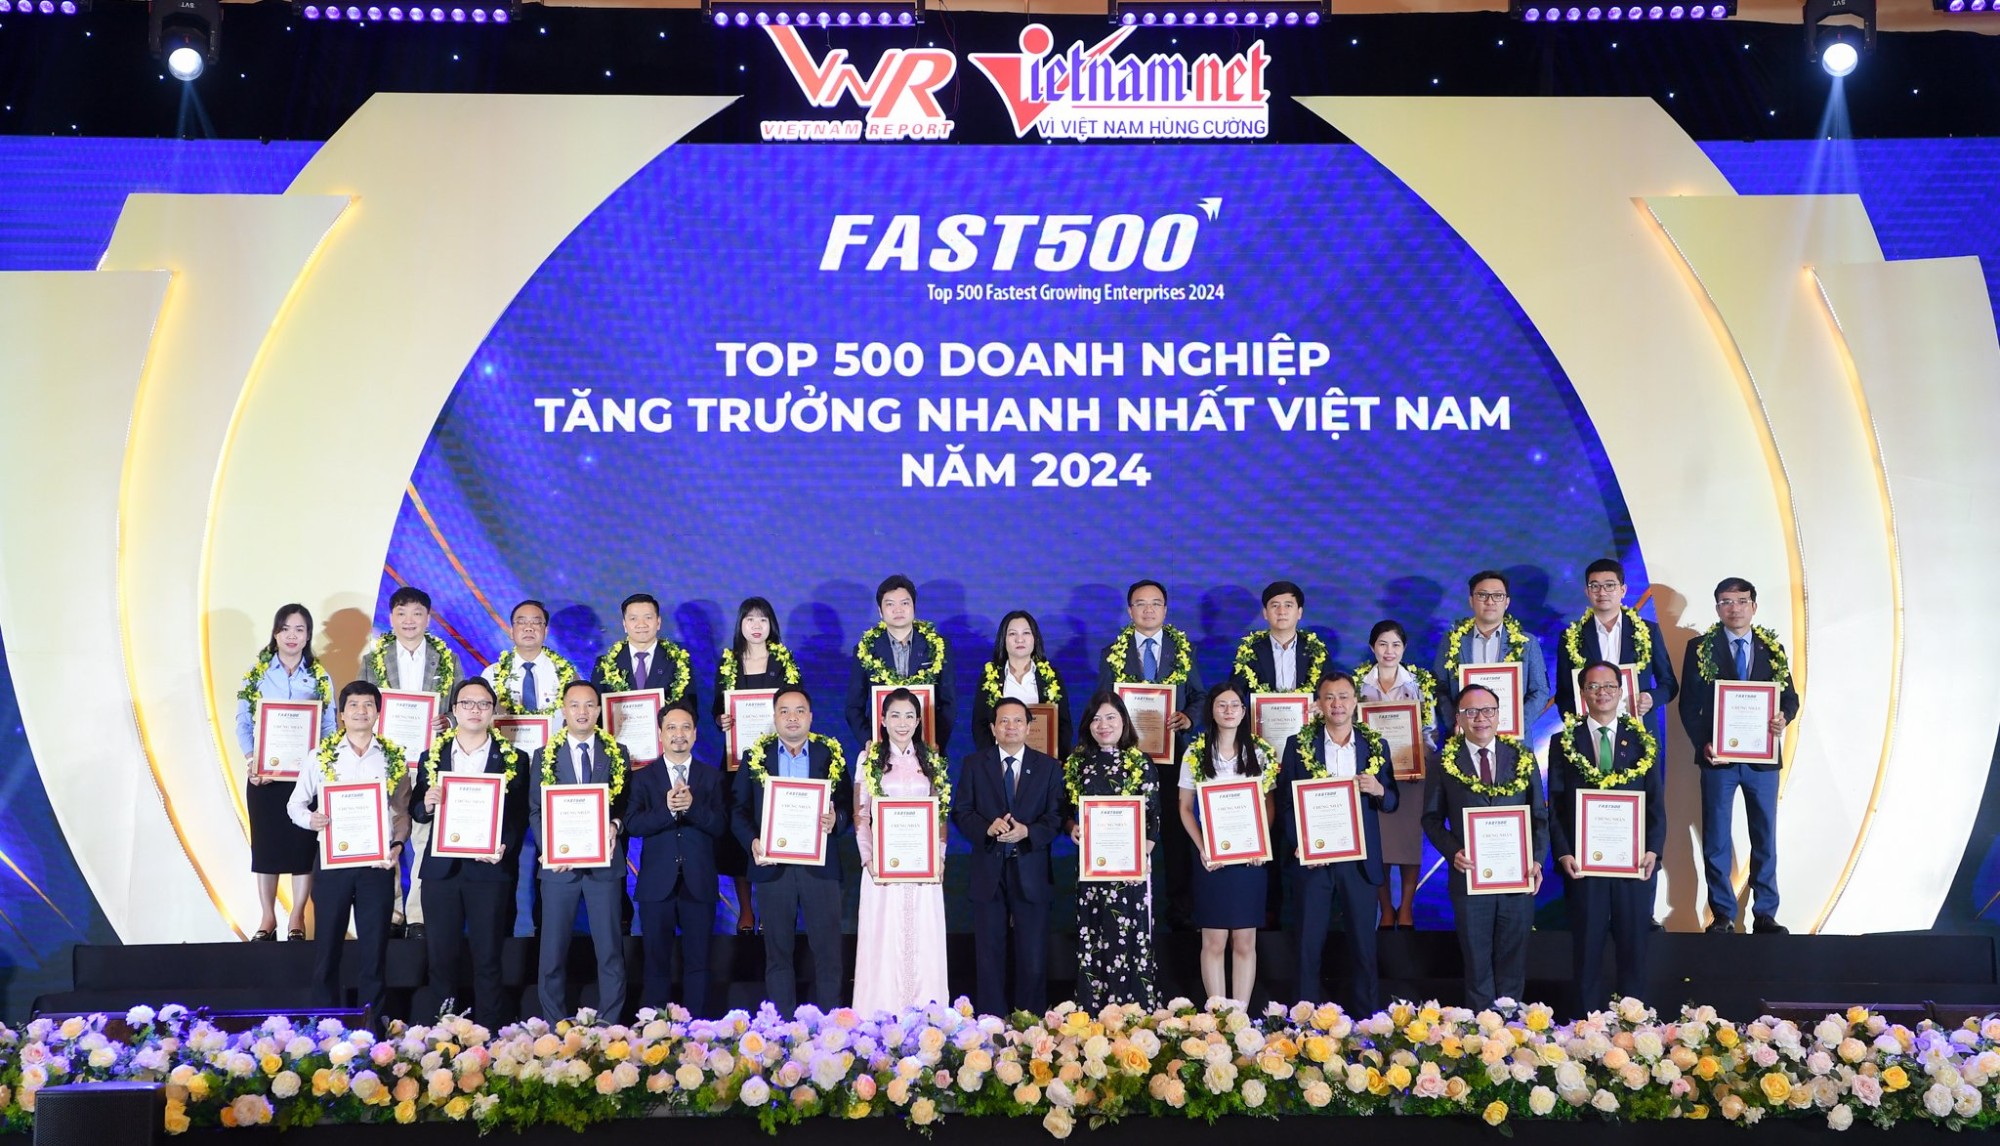 Lễ công bố “Top 500 doanh nghiệp tăng trưởng nhanh nhất Việt Nam” đã được tổ chức thành công tại Hà Nội vào ngày 24/04/2024